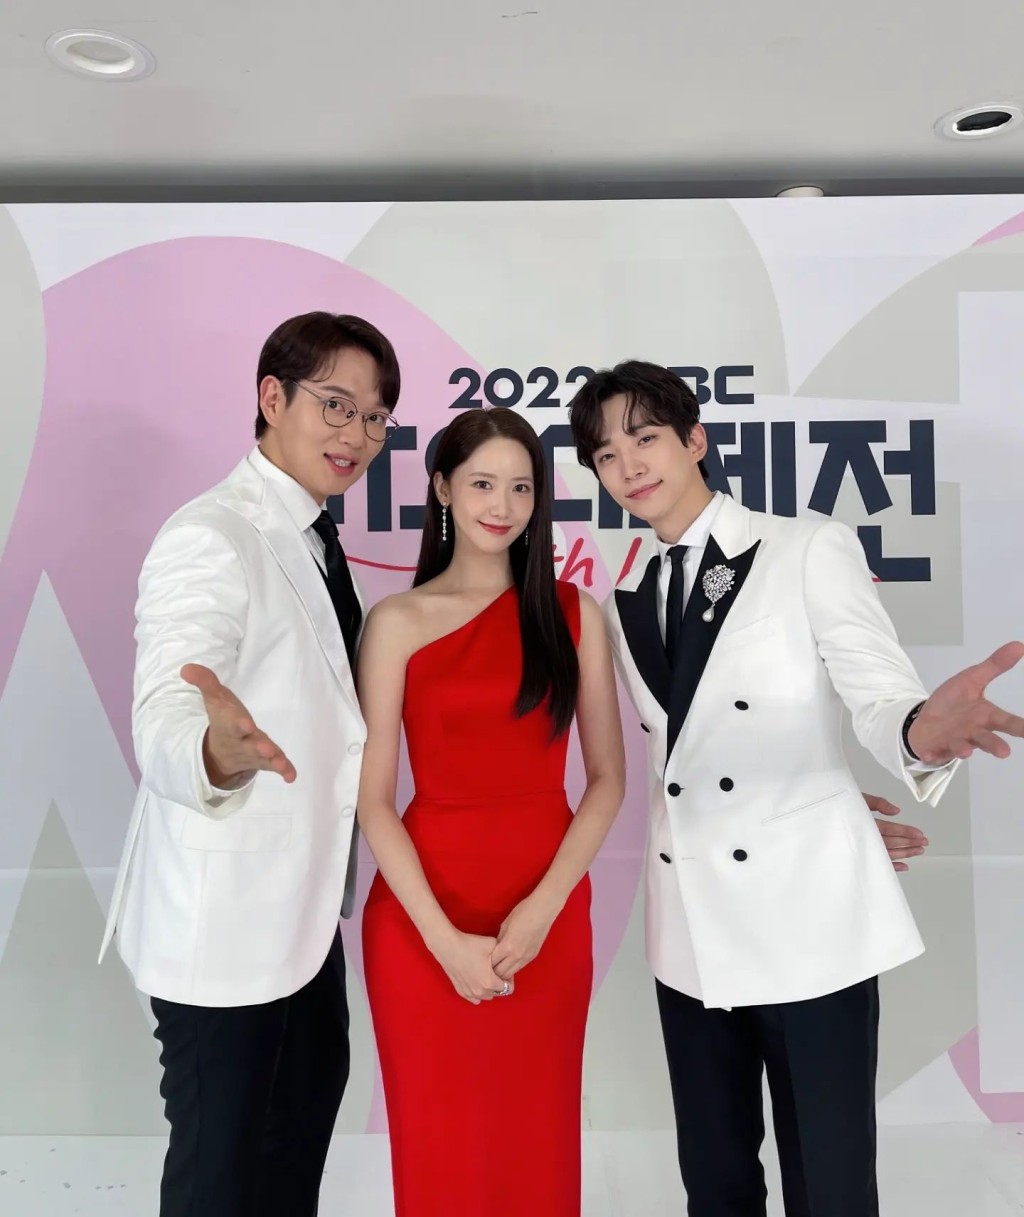 俊昊與潤娥2022年再在《MBC歌謠大祭典》一同擔任主持。